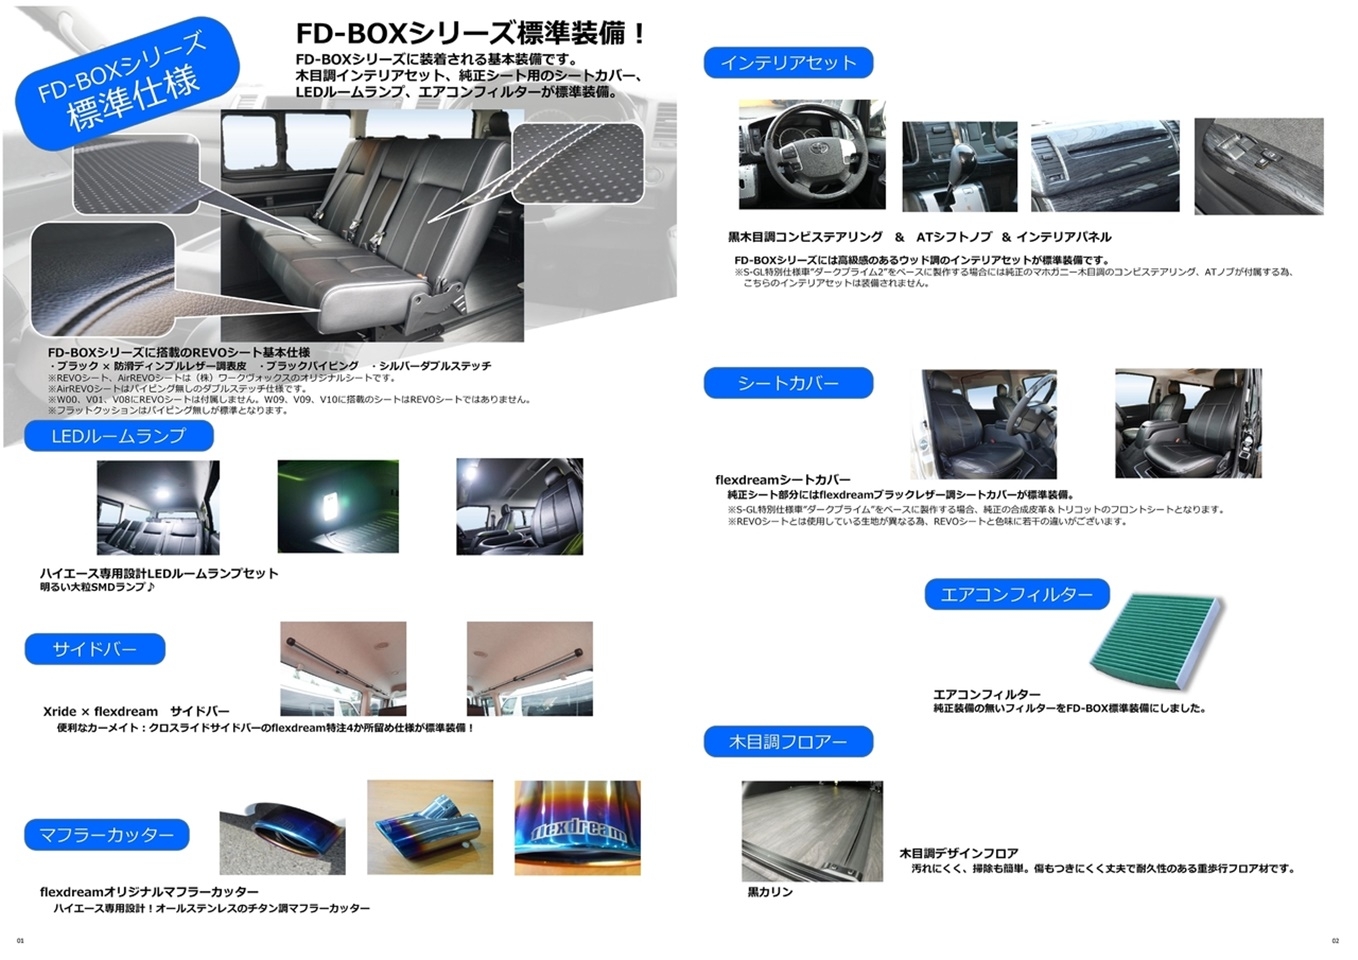 ハイエースナローボディーバン ライトキャンピングカー【FD-BOX V08-N】